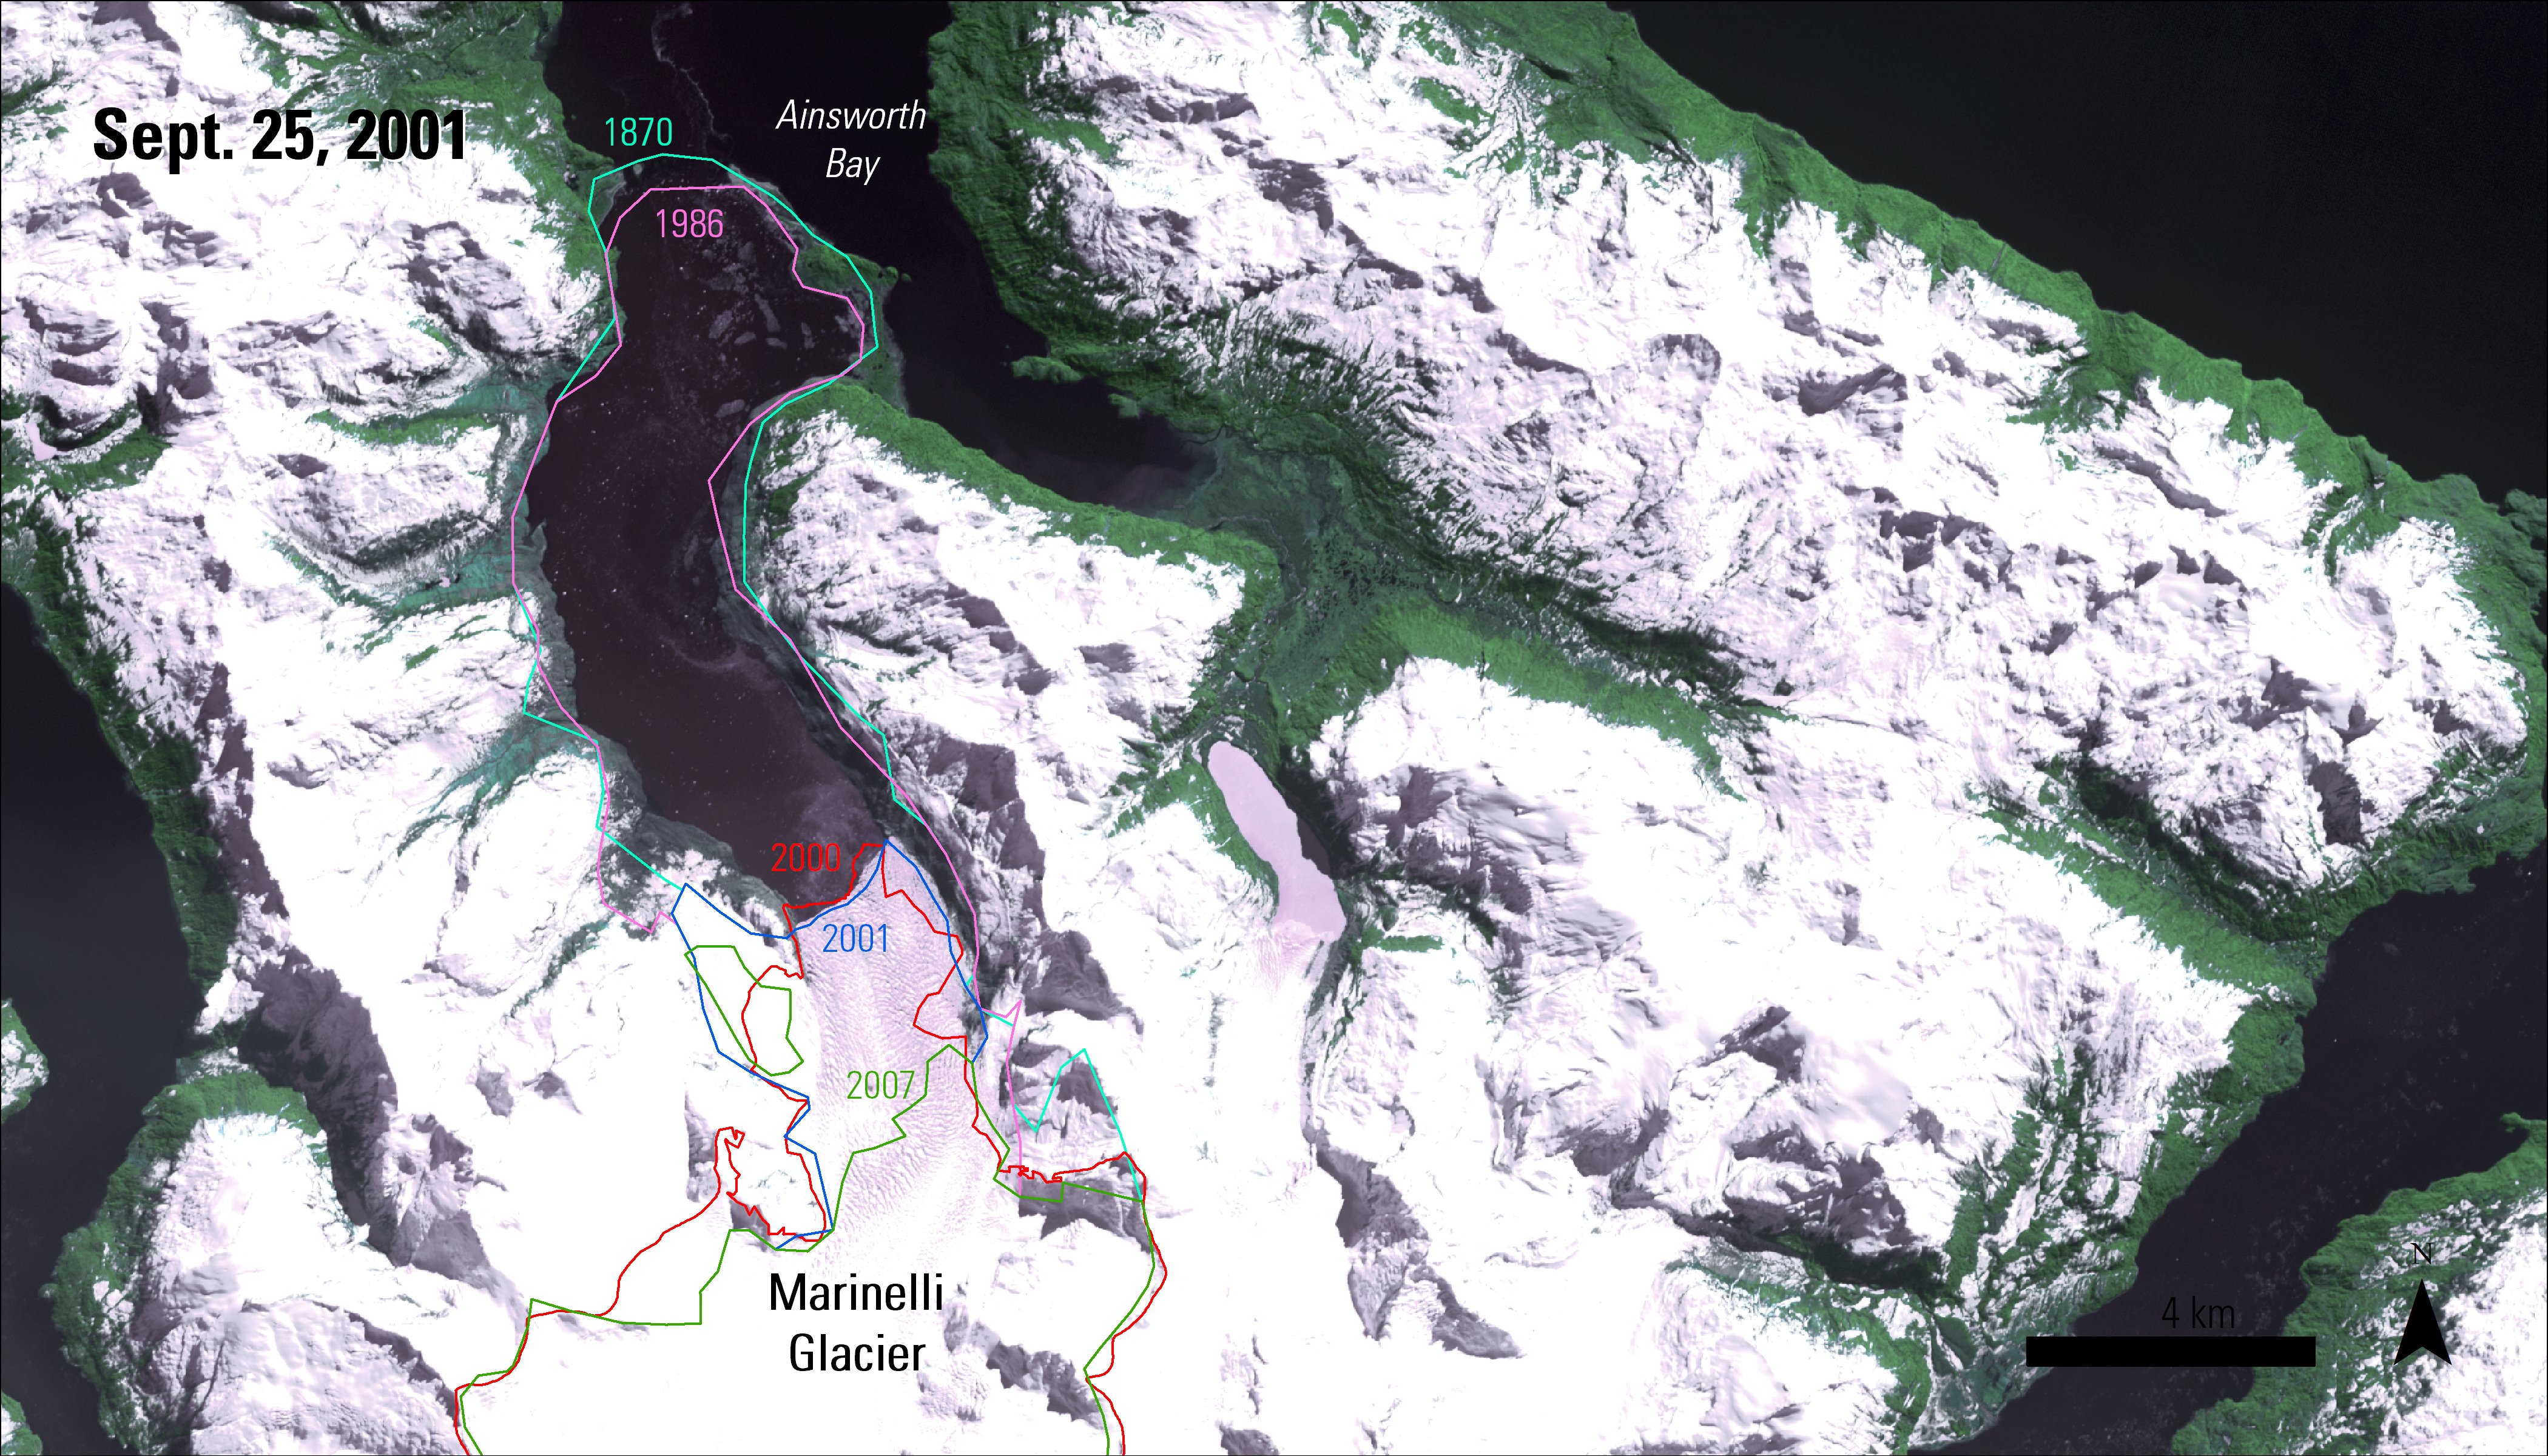 ASTER L1T natural color composite over the Marinelli Glacier, Chile, taken on September 25, 2001.